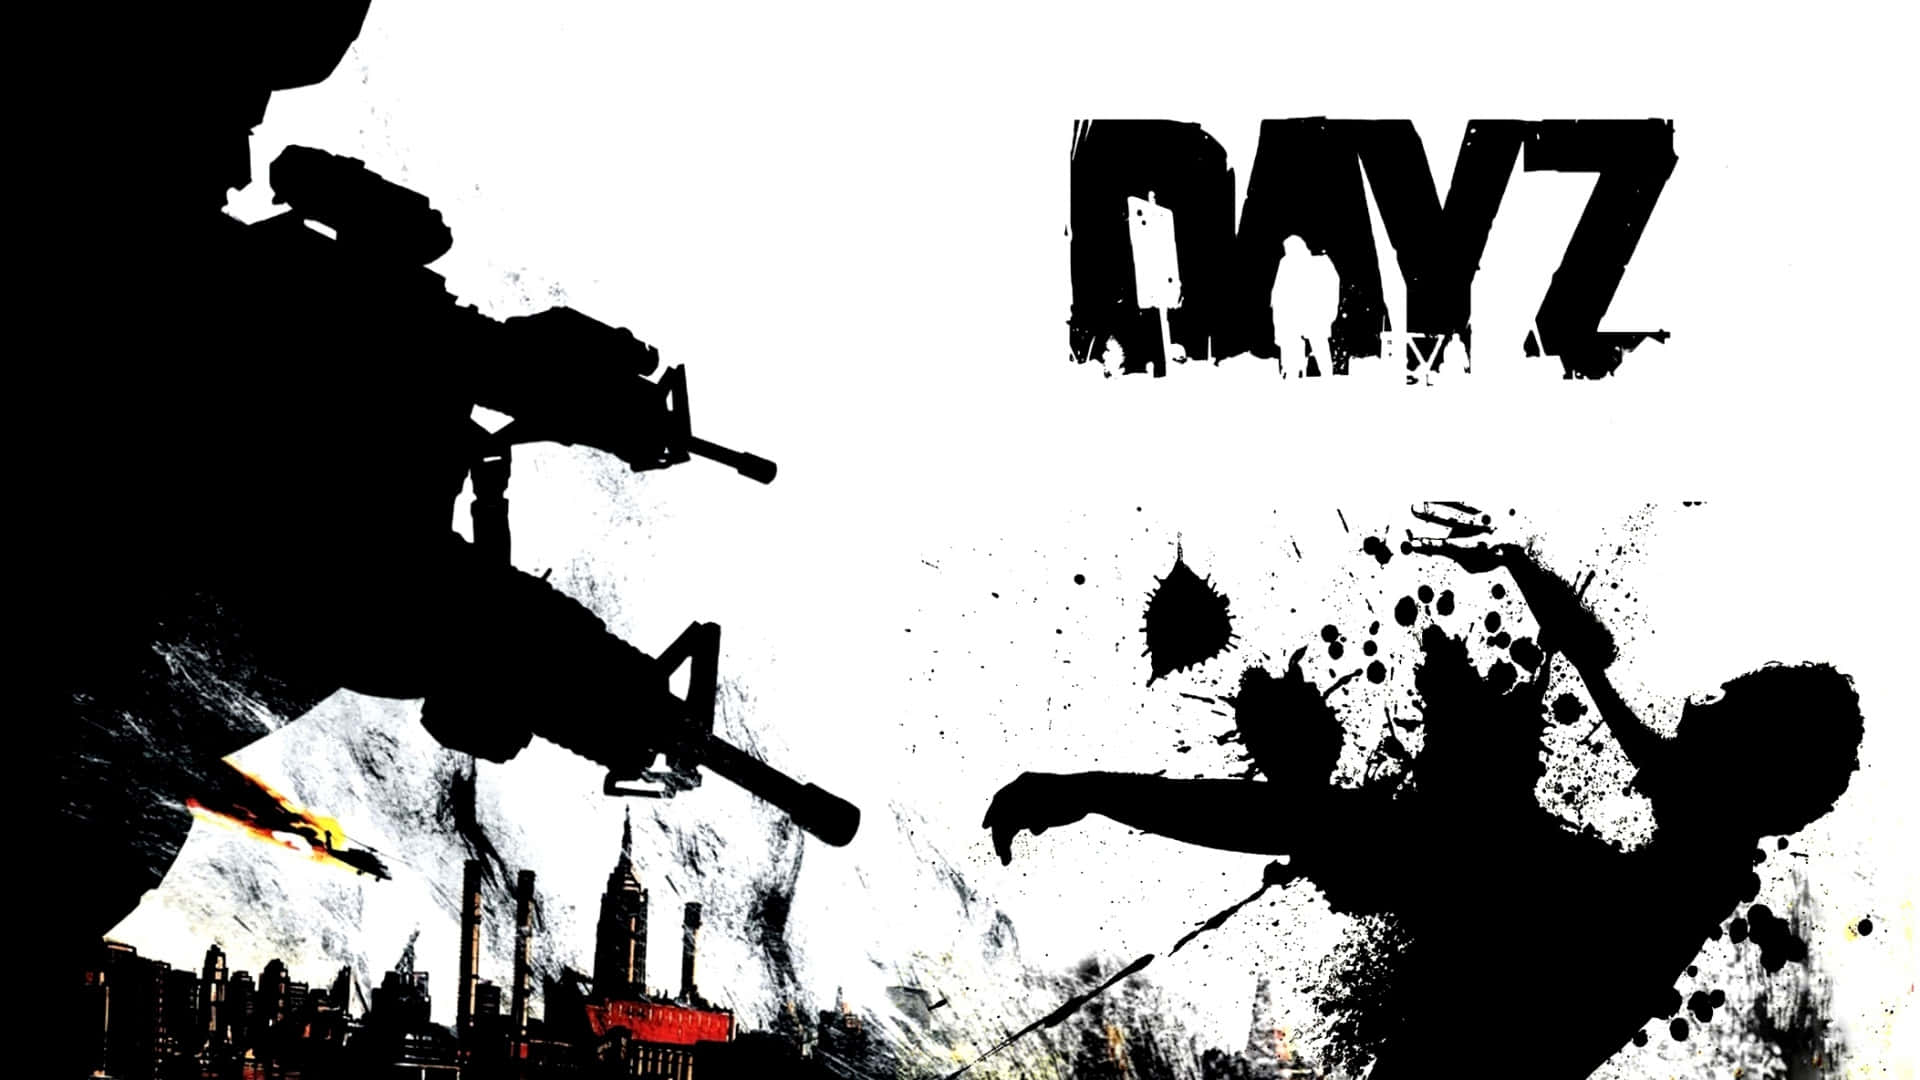 1080pdayz Hintergrund Schwarzes Farb-silhouetten-poster, Das Zombies Erschießt.